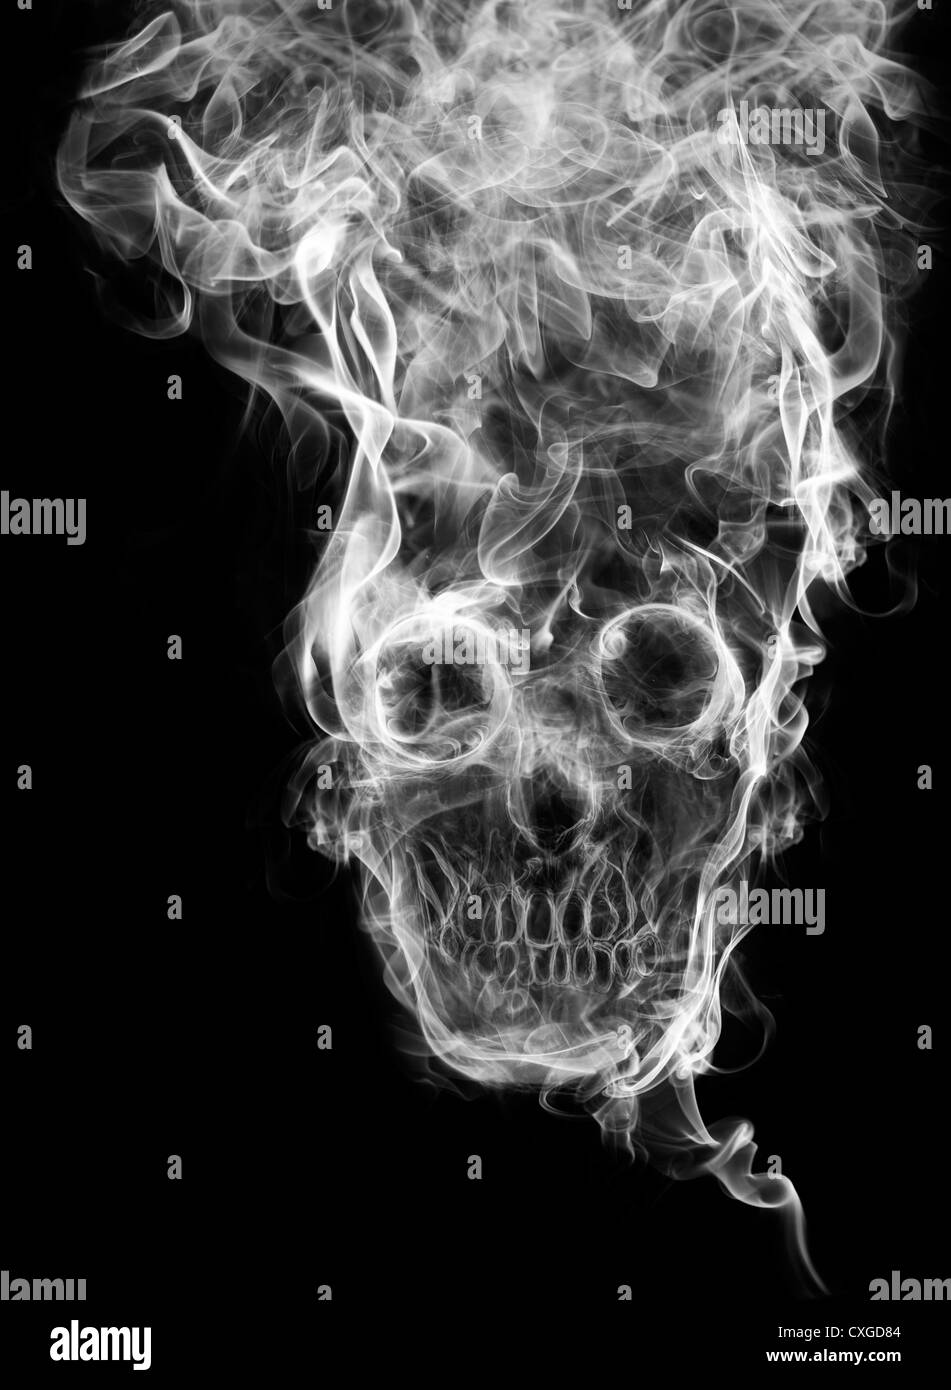 Schädel des Rauches. Tot, als Symbol für die Gefahren des Rauchens für die Gesundheit und unmittelbar bevorstehenden Todes von Menschen geformten Schädel Rauch. Stockfoto